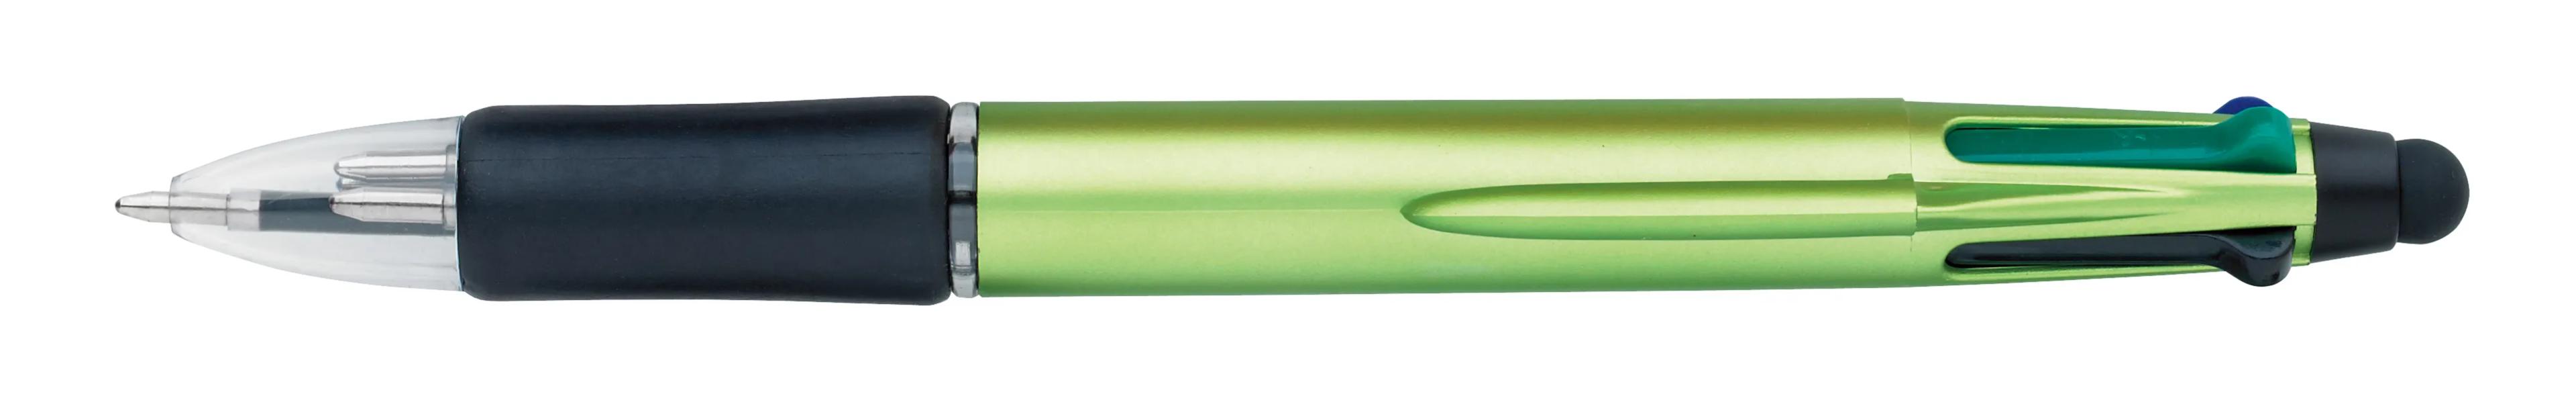 Orbitor Metallic Stylus Pen 9 of 56